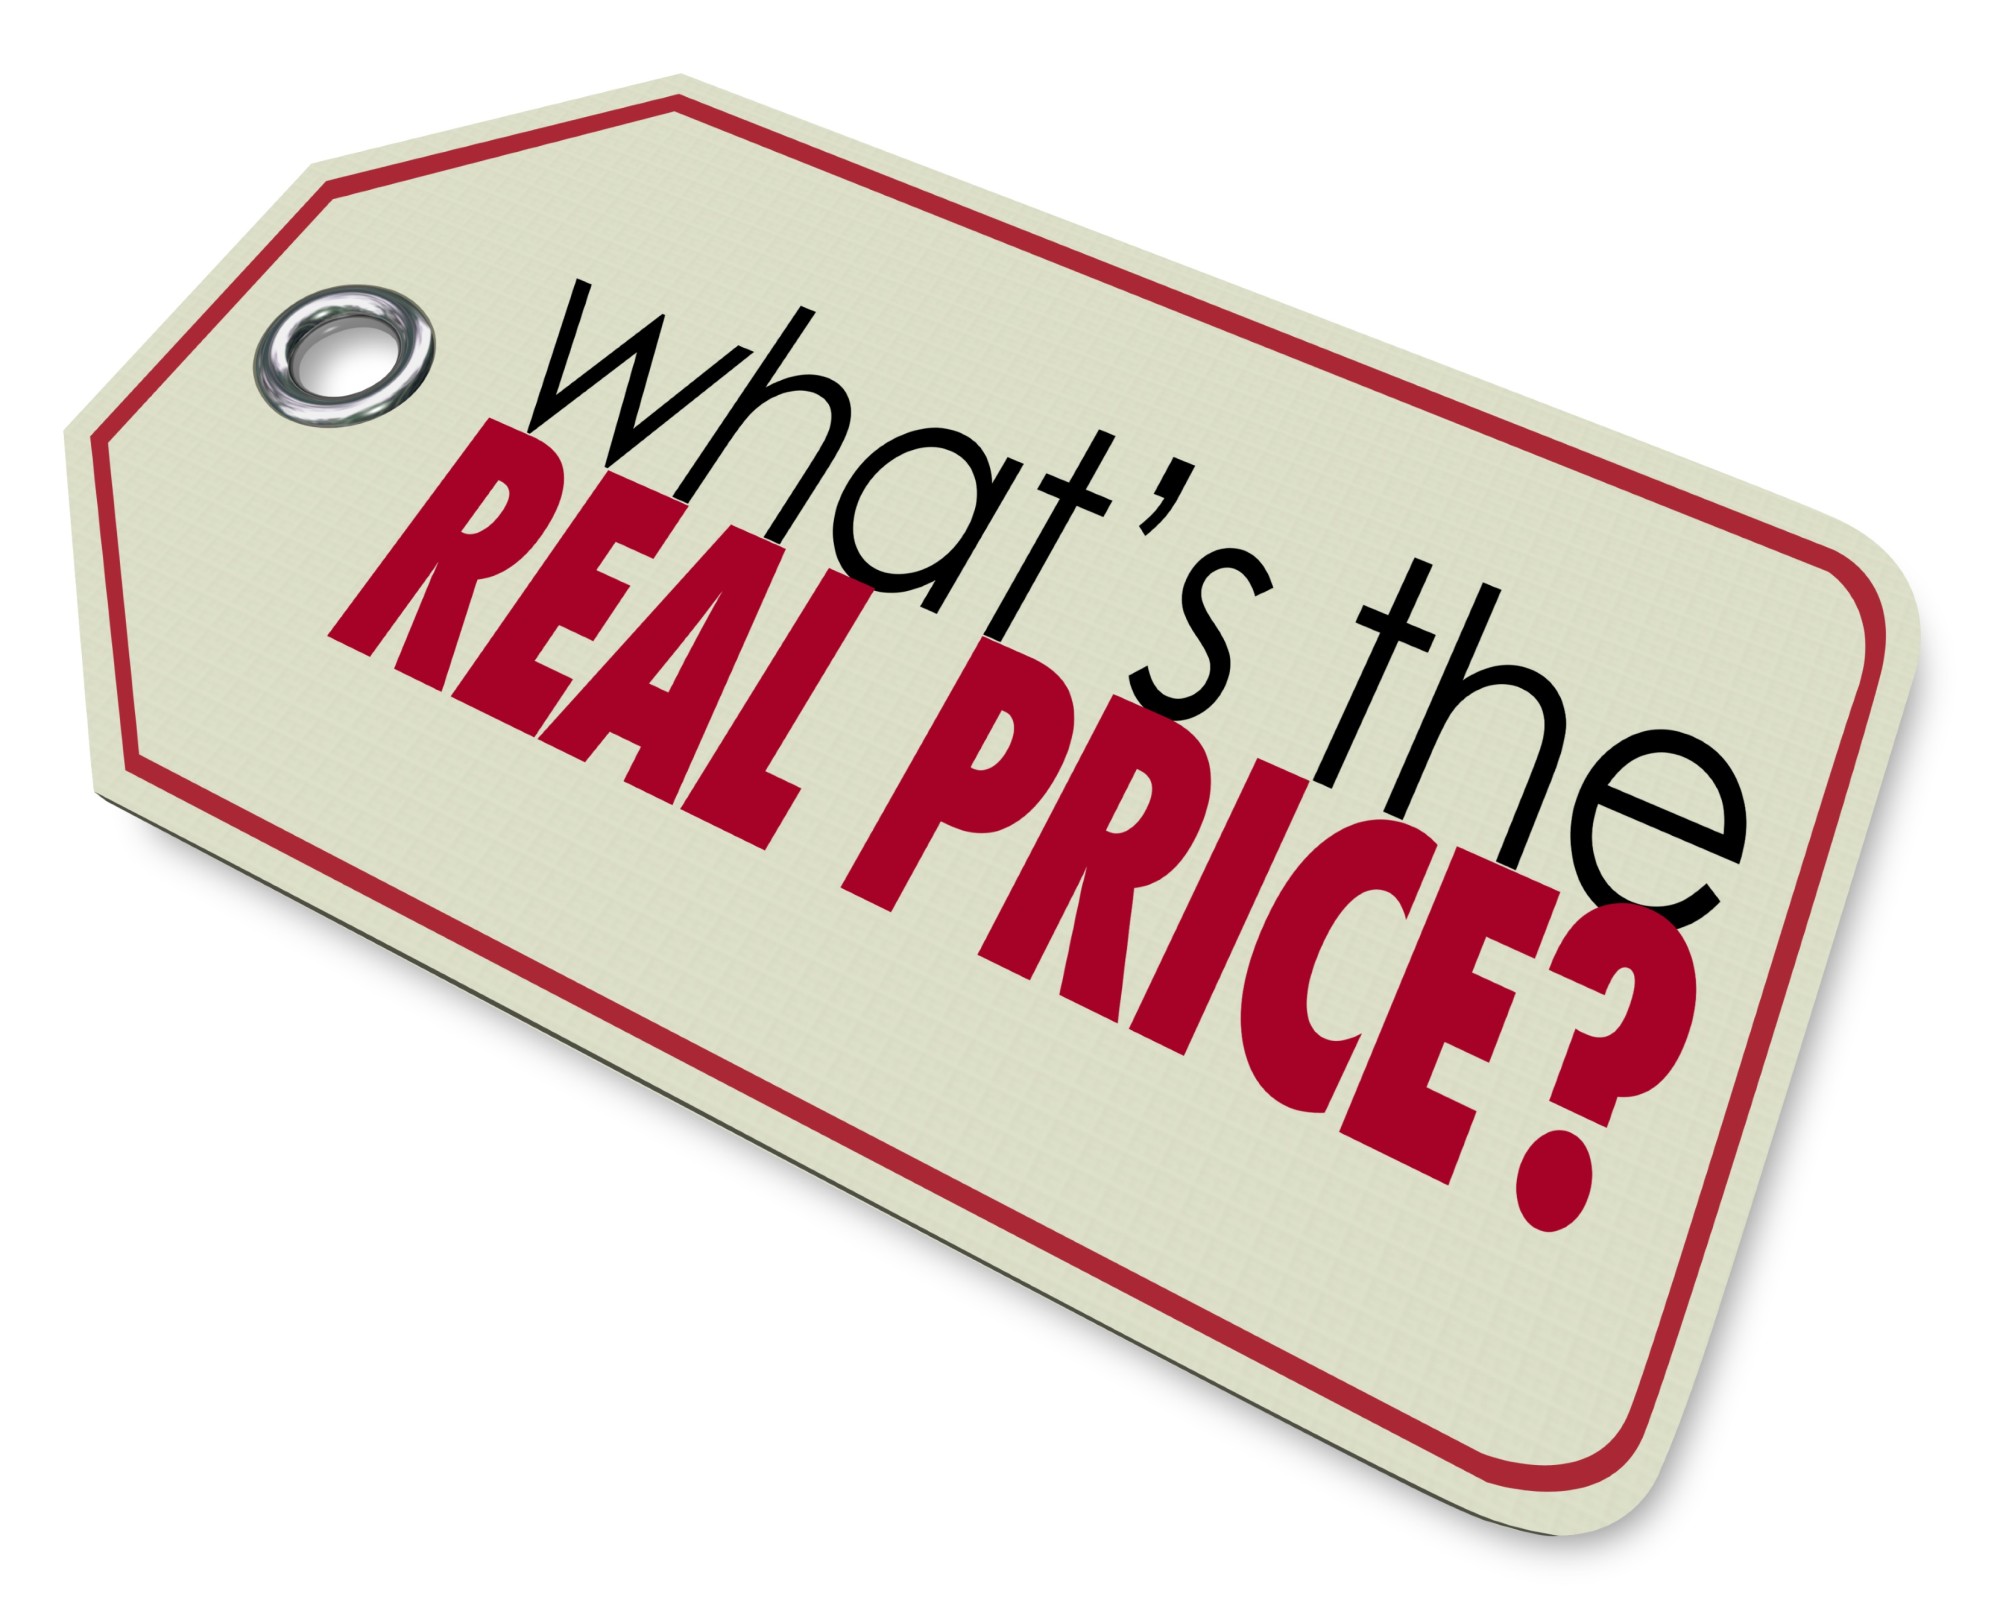 real price, hidden costs, inefficiencies, lost profit, expensive